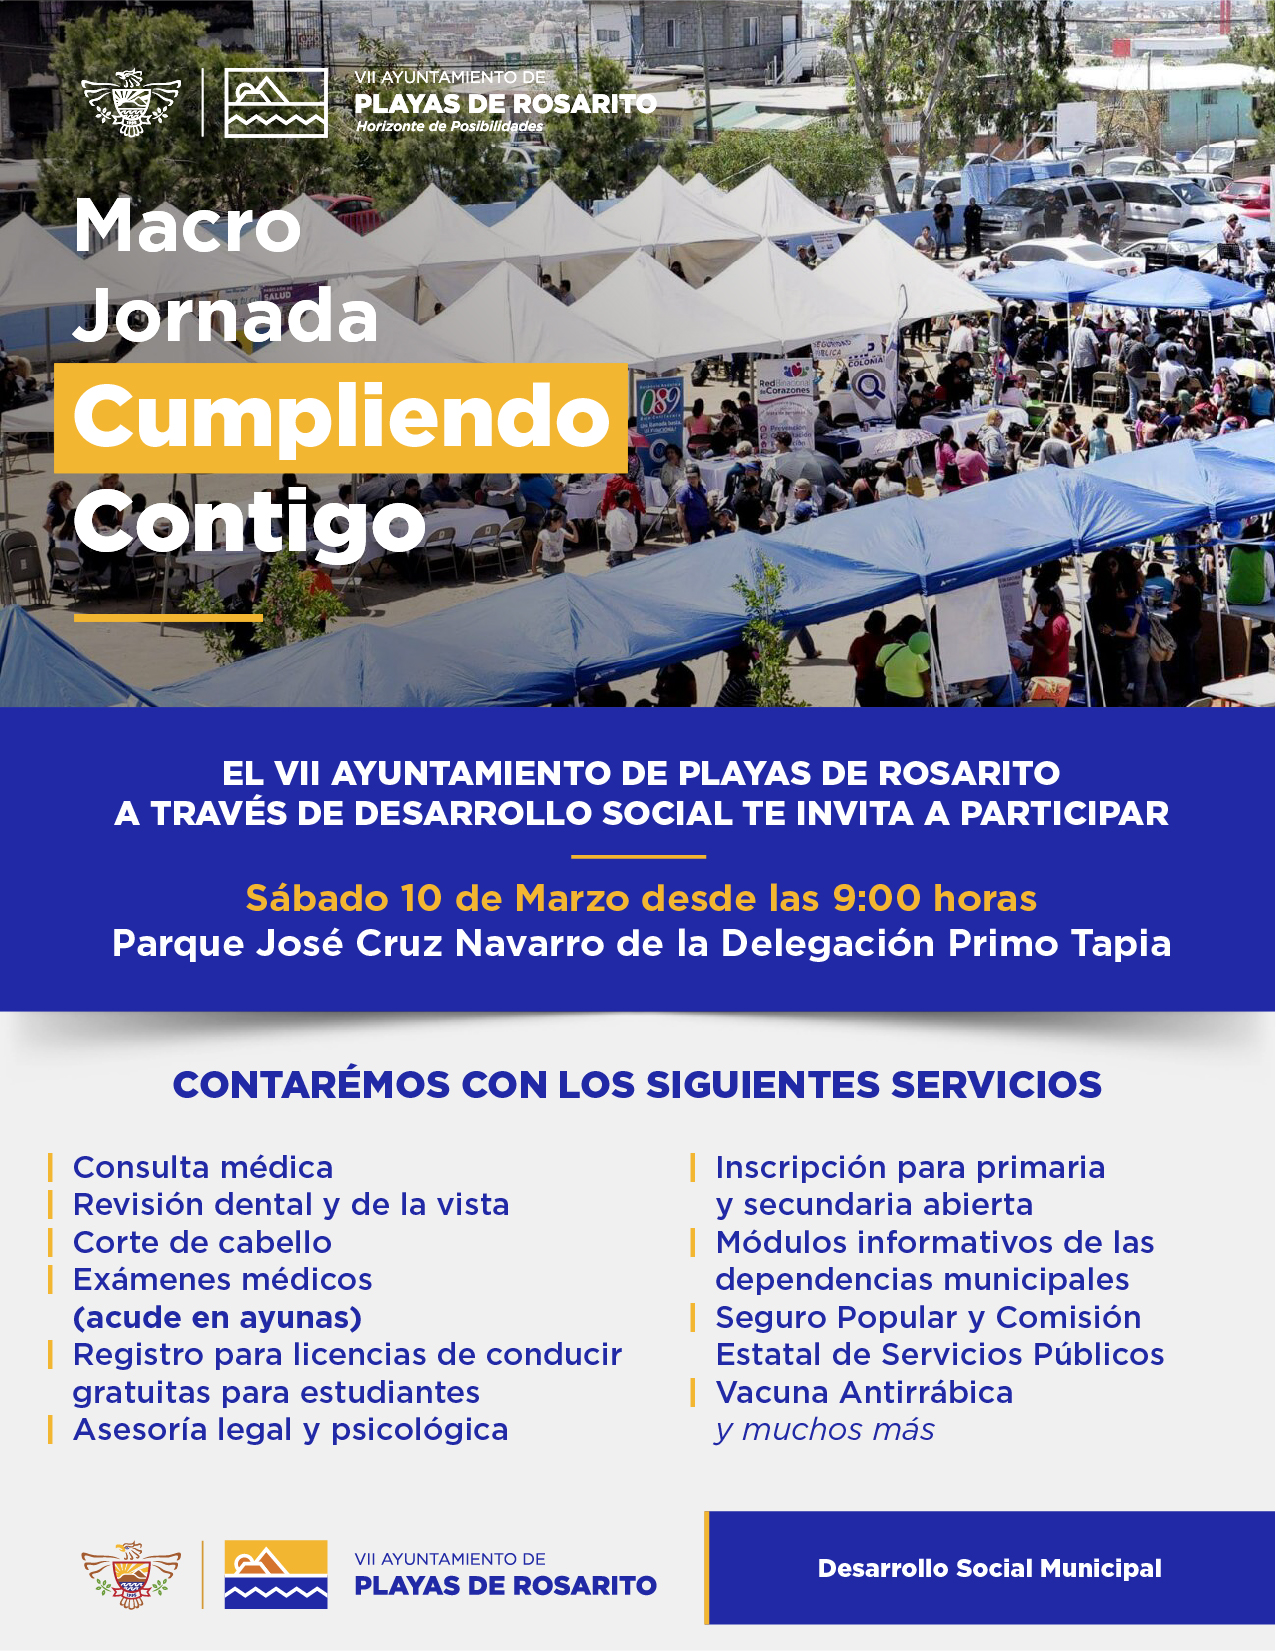 VII Ayuntamiento de Playas de Rosarito invita a Macro Jornada “Cumpliendo Contigo“